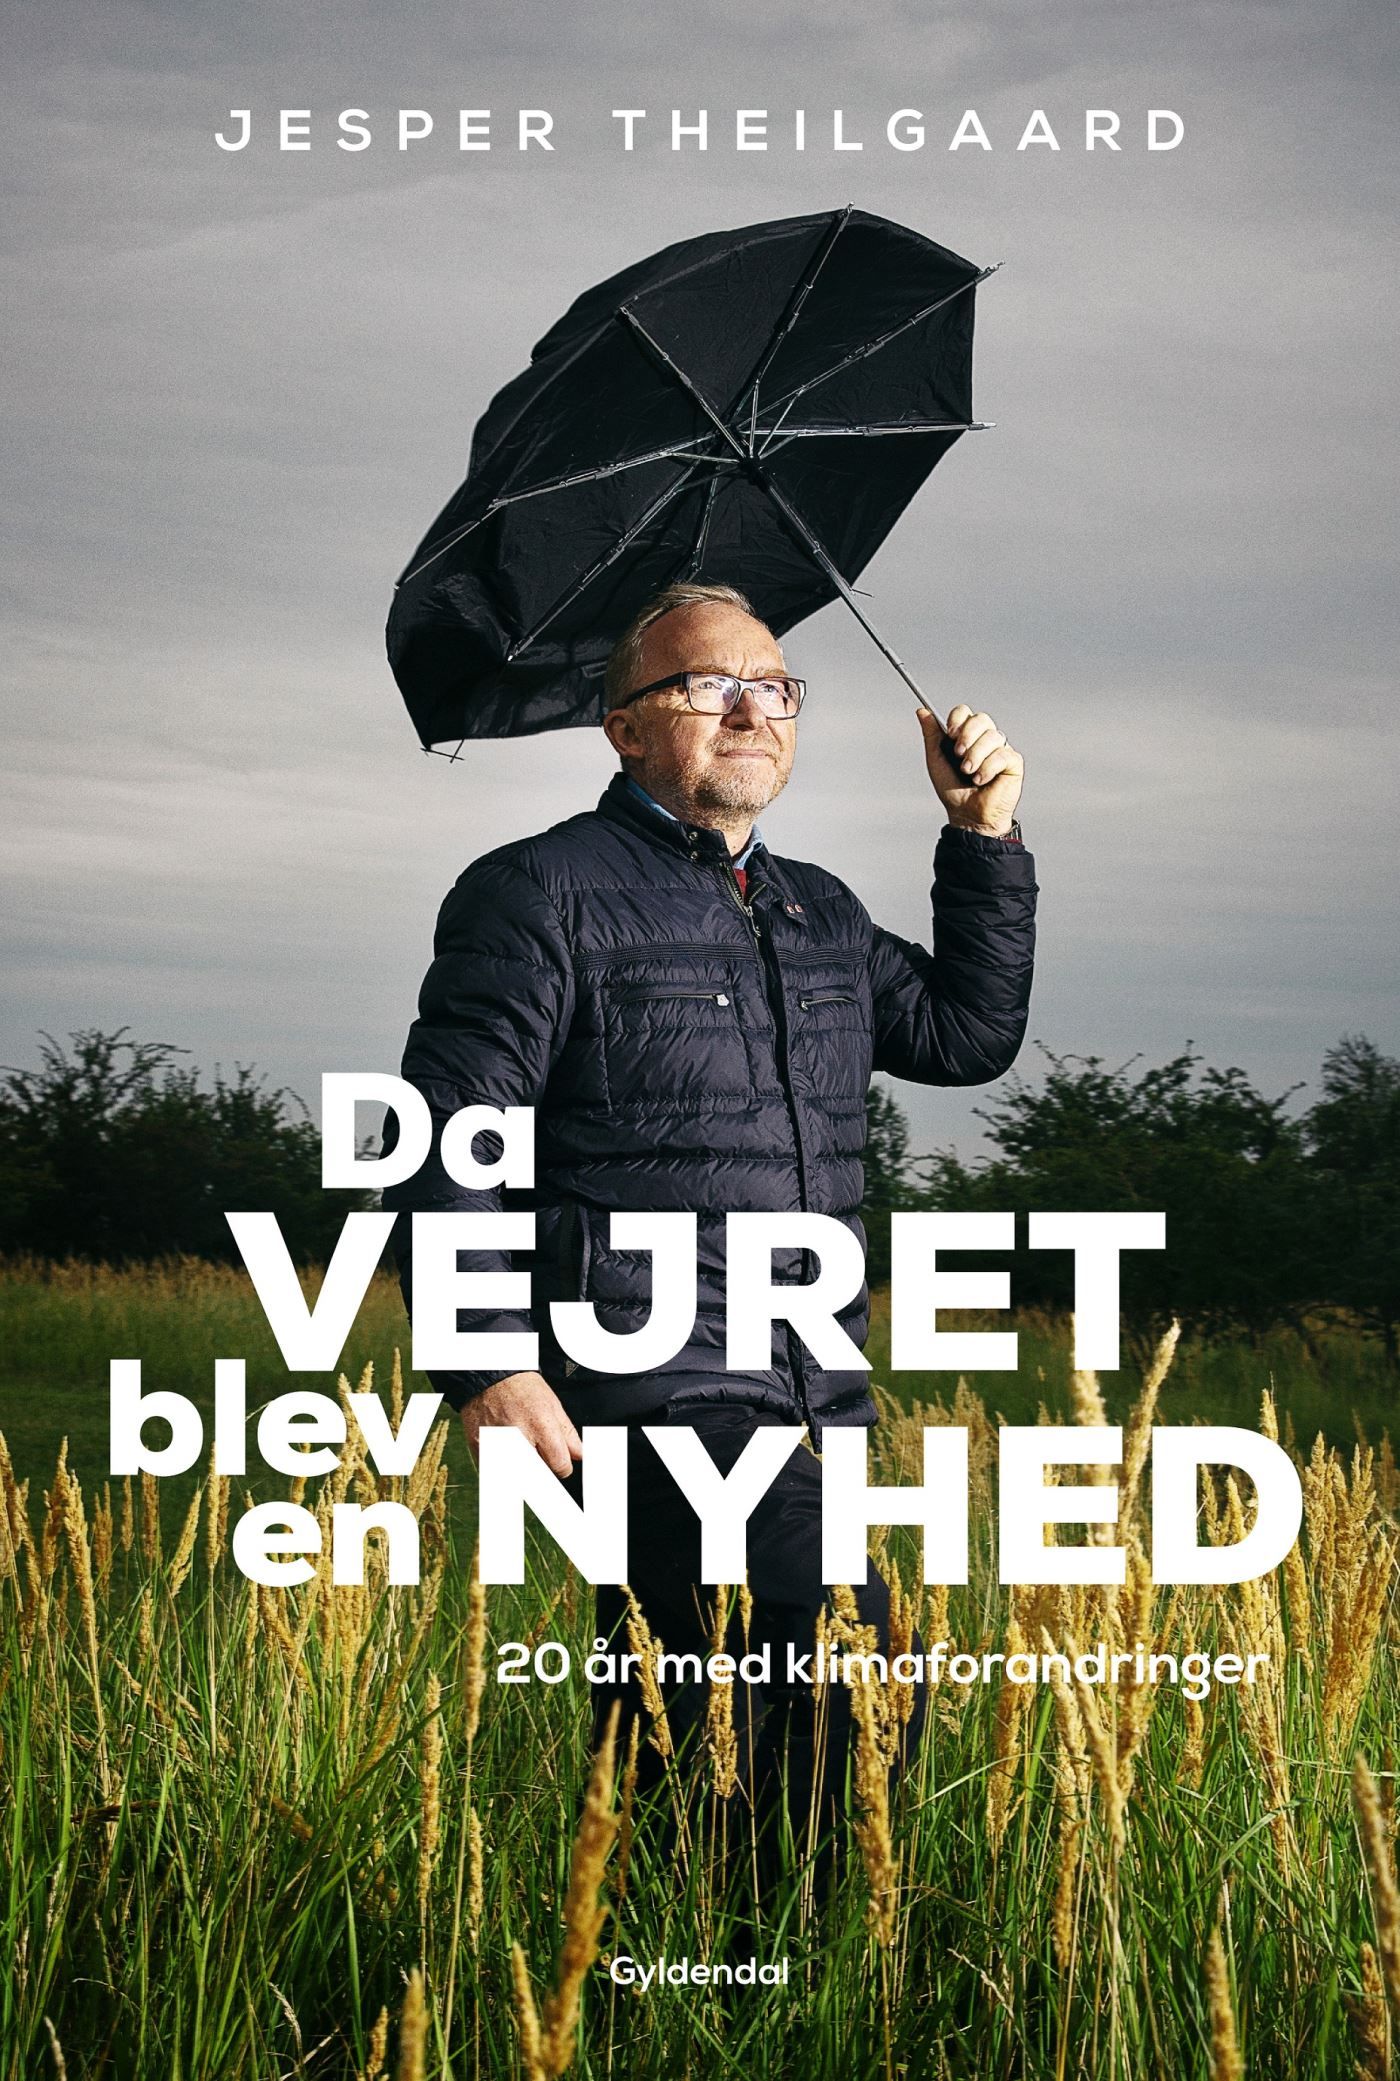 Da vejret blev en nyhed, audiobook by Jesper Theilgaard